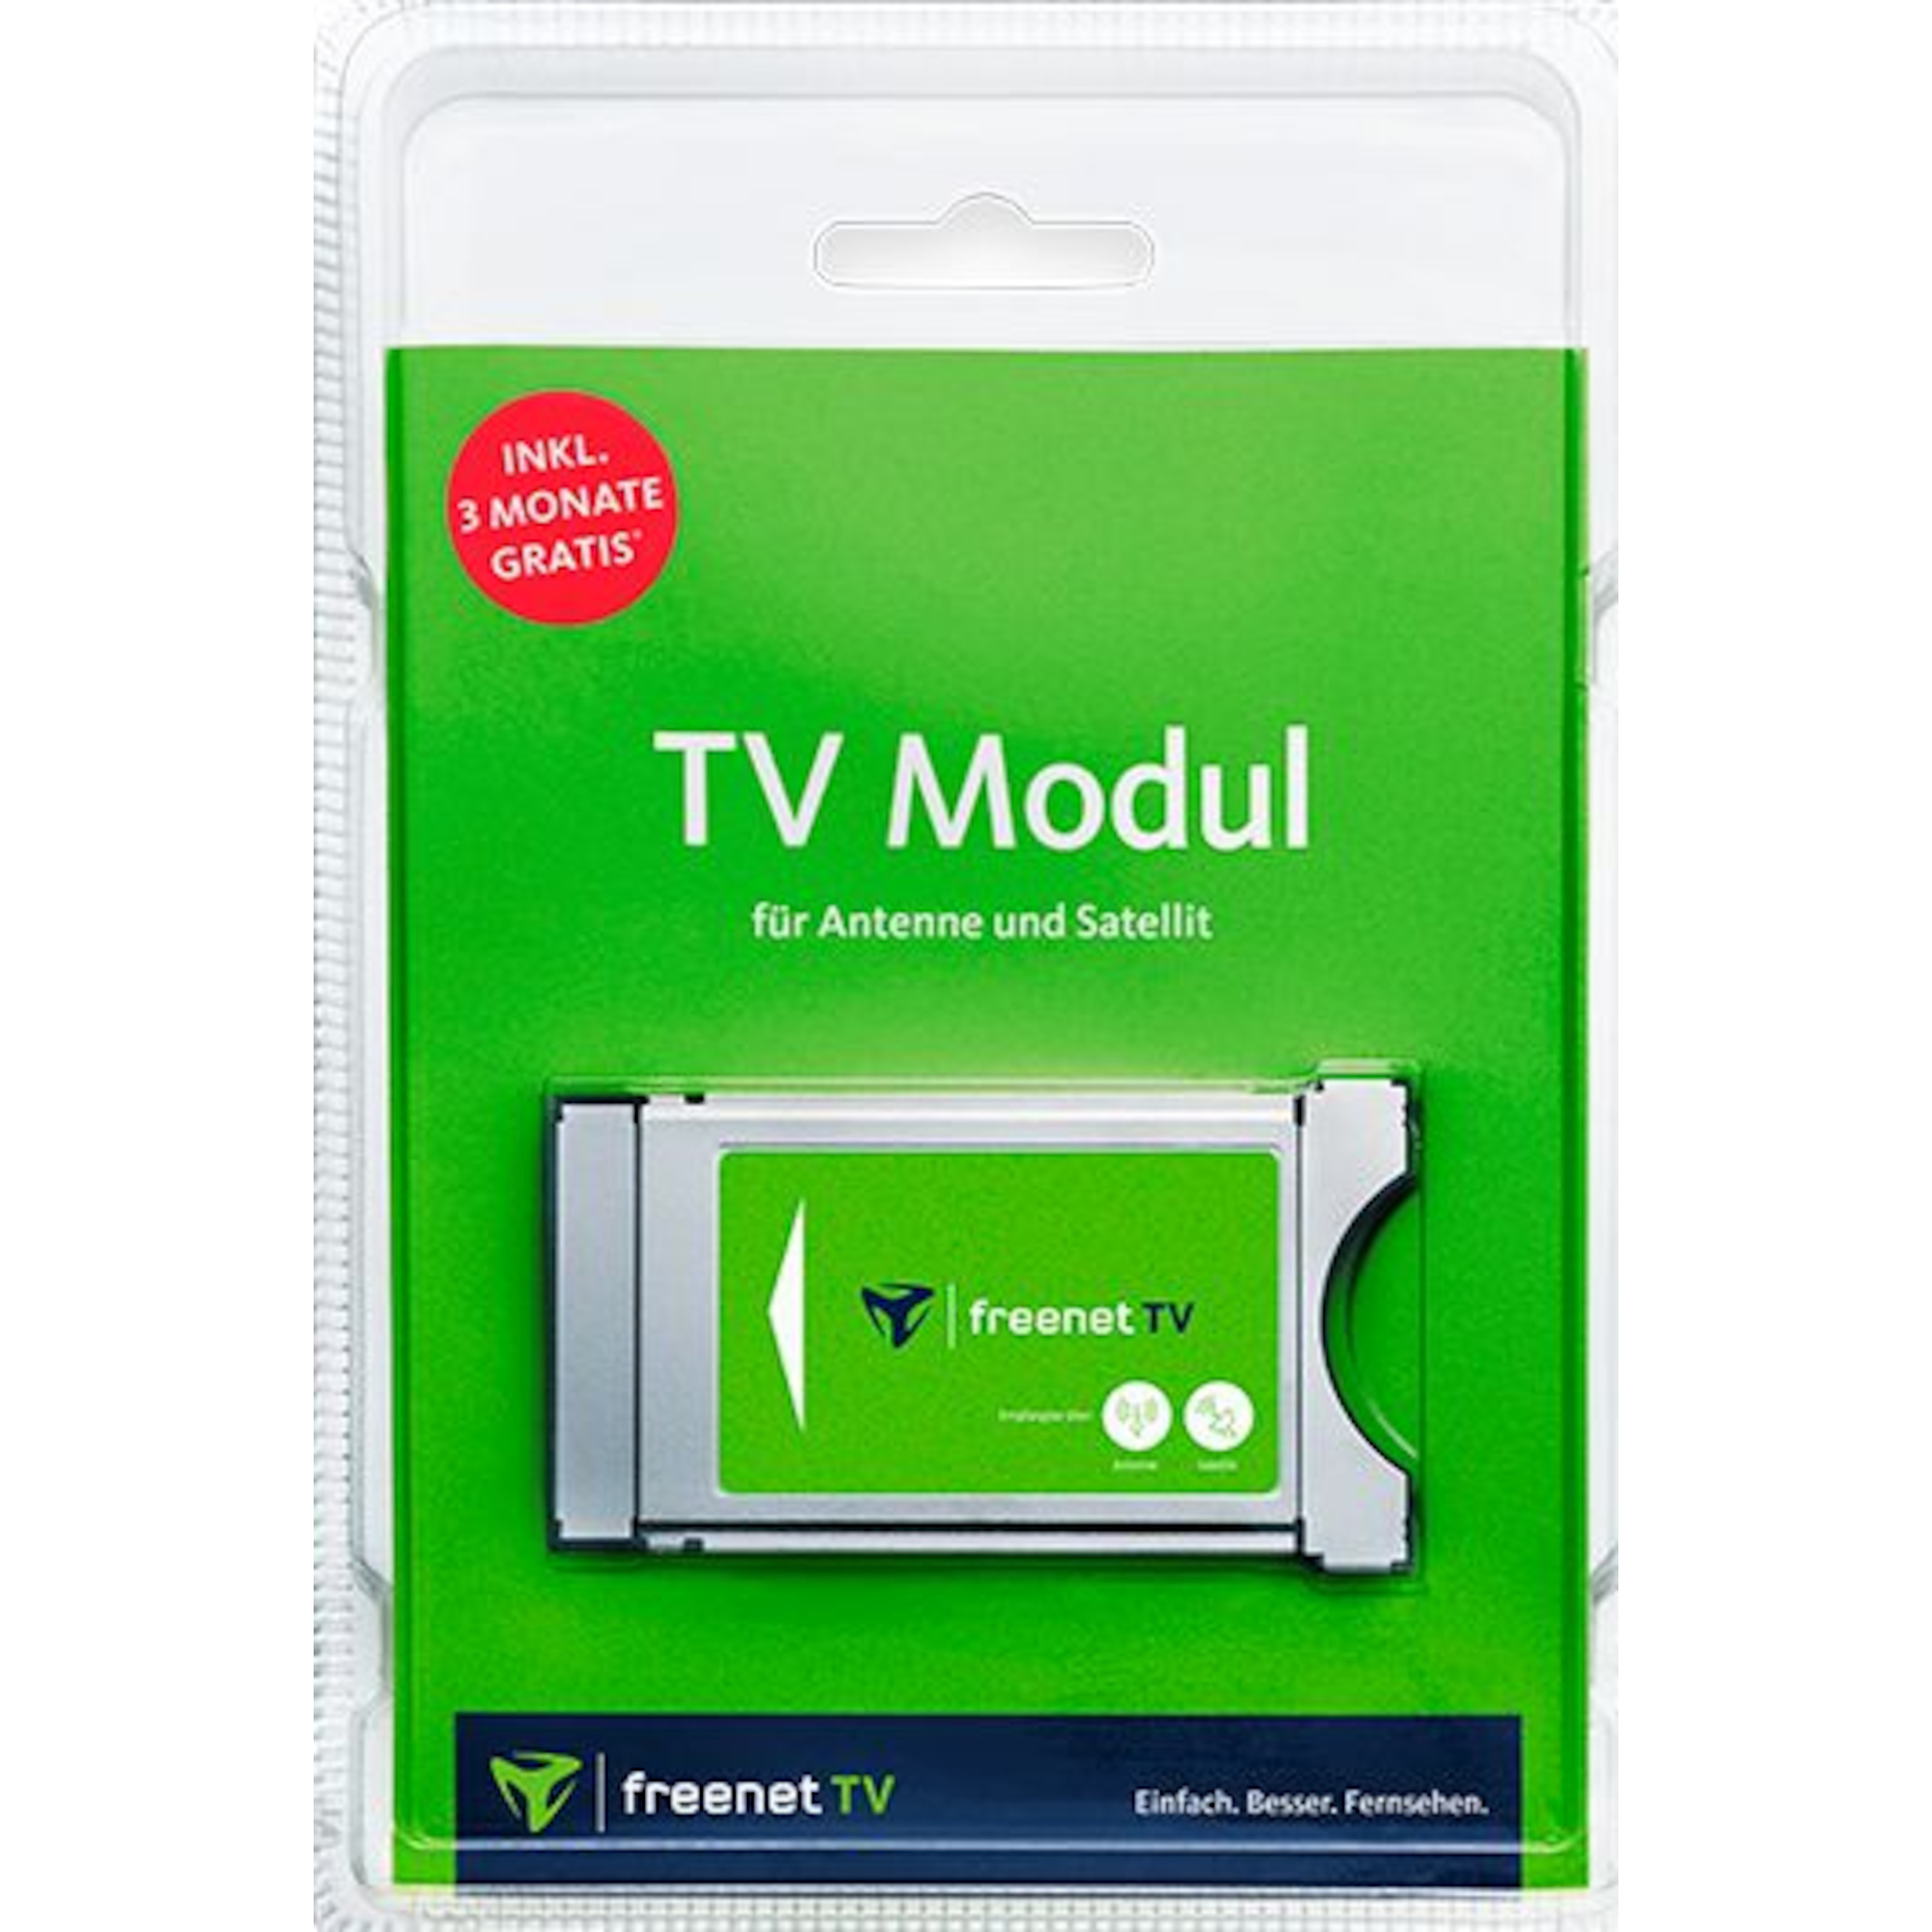 MEDION® LIFE® P15001 TV, 125,7 cm (50'') Ultra HD Fernseher, inkl. DVB-T 2 HD Modul (3 Monate freenet TV gratis) - ARTIKELSET